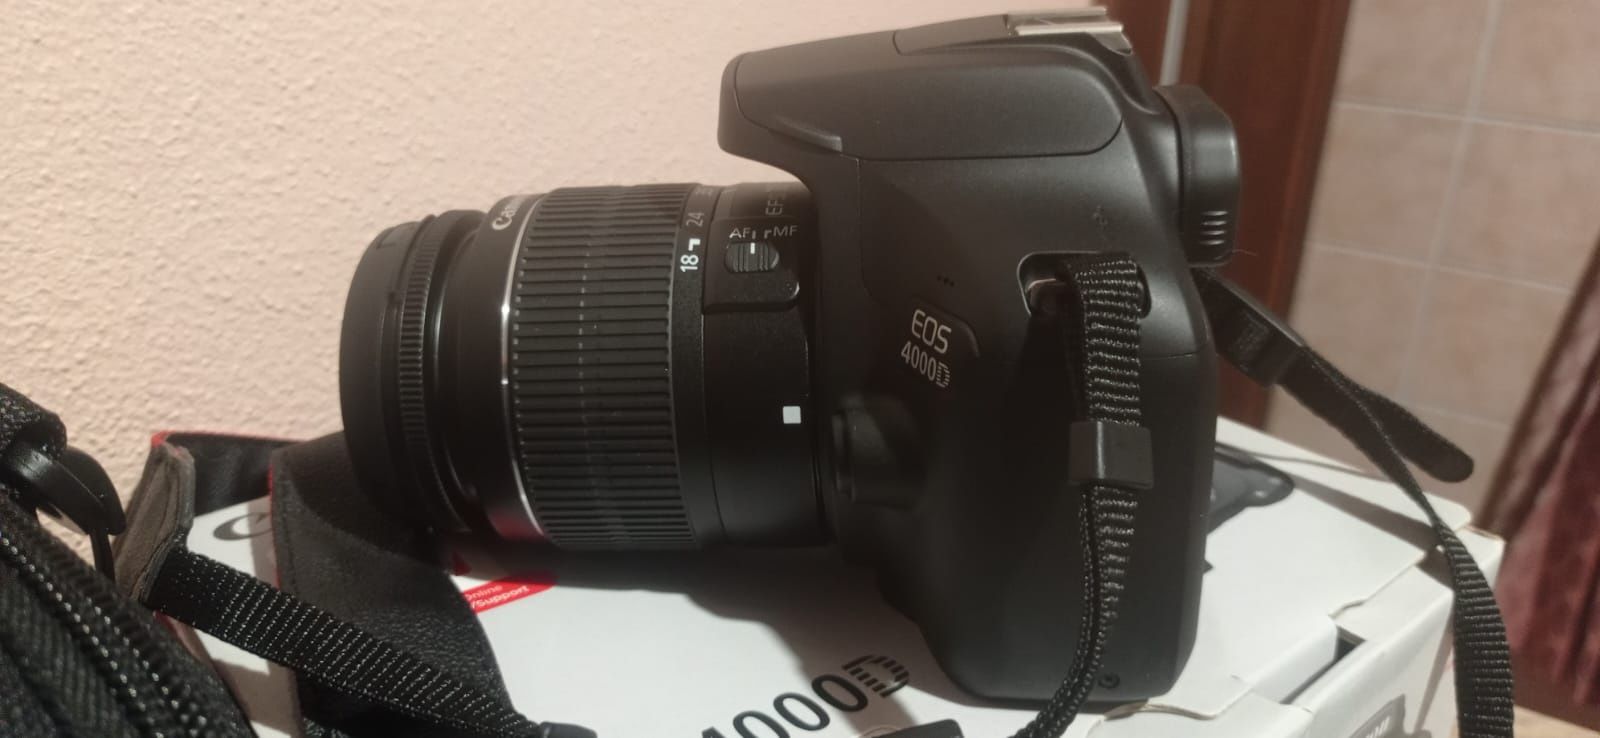 Canon EOS 4000D com lente 18-55